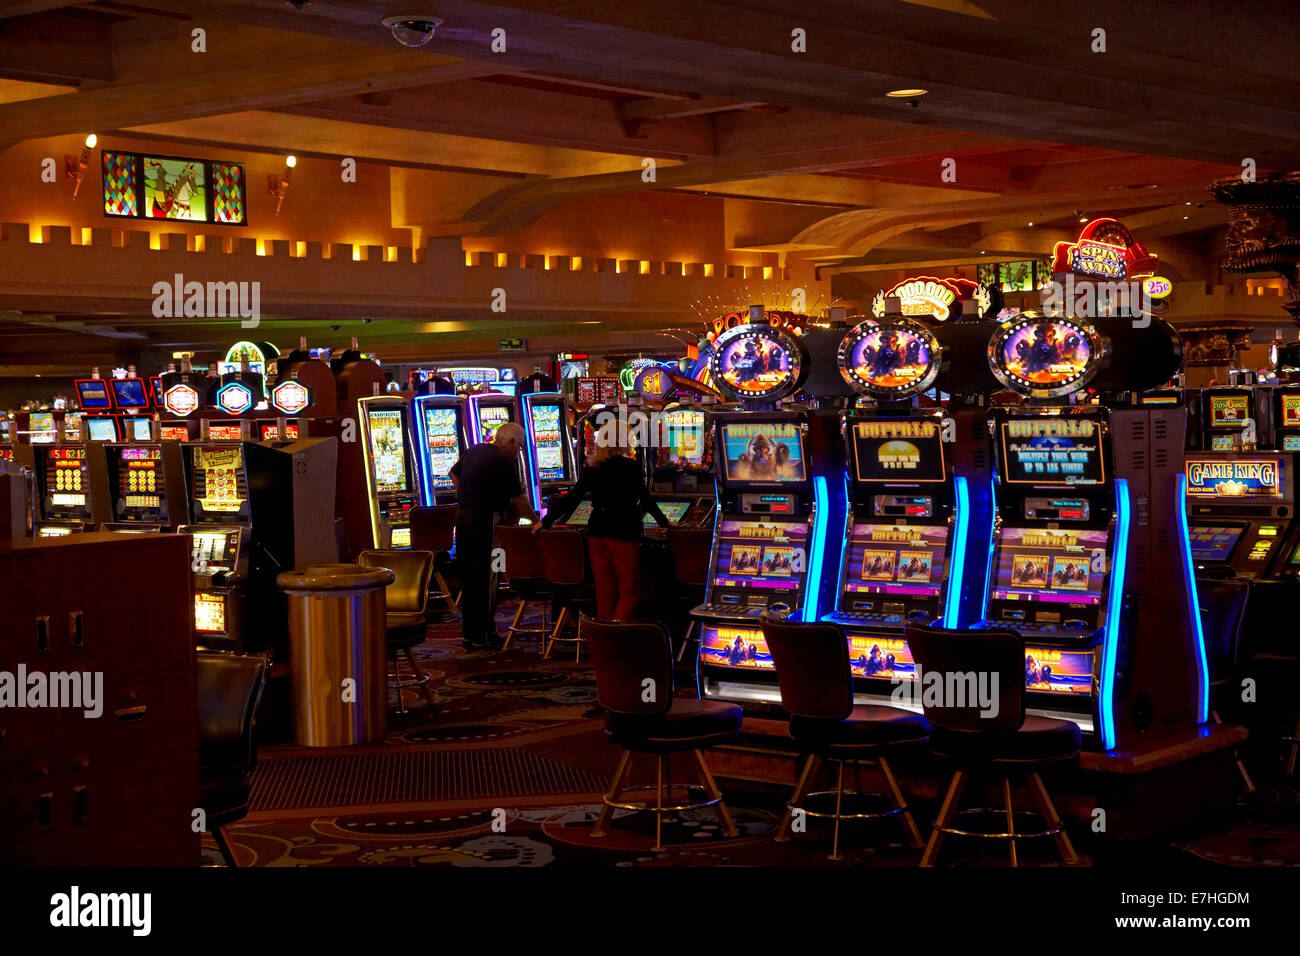 Casino Las Vegas Slots